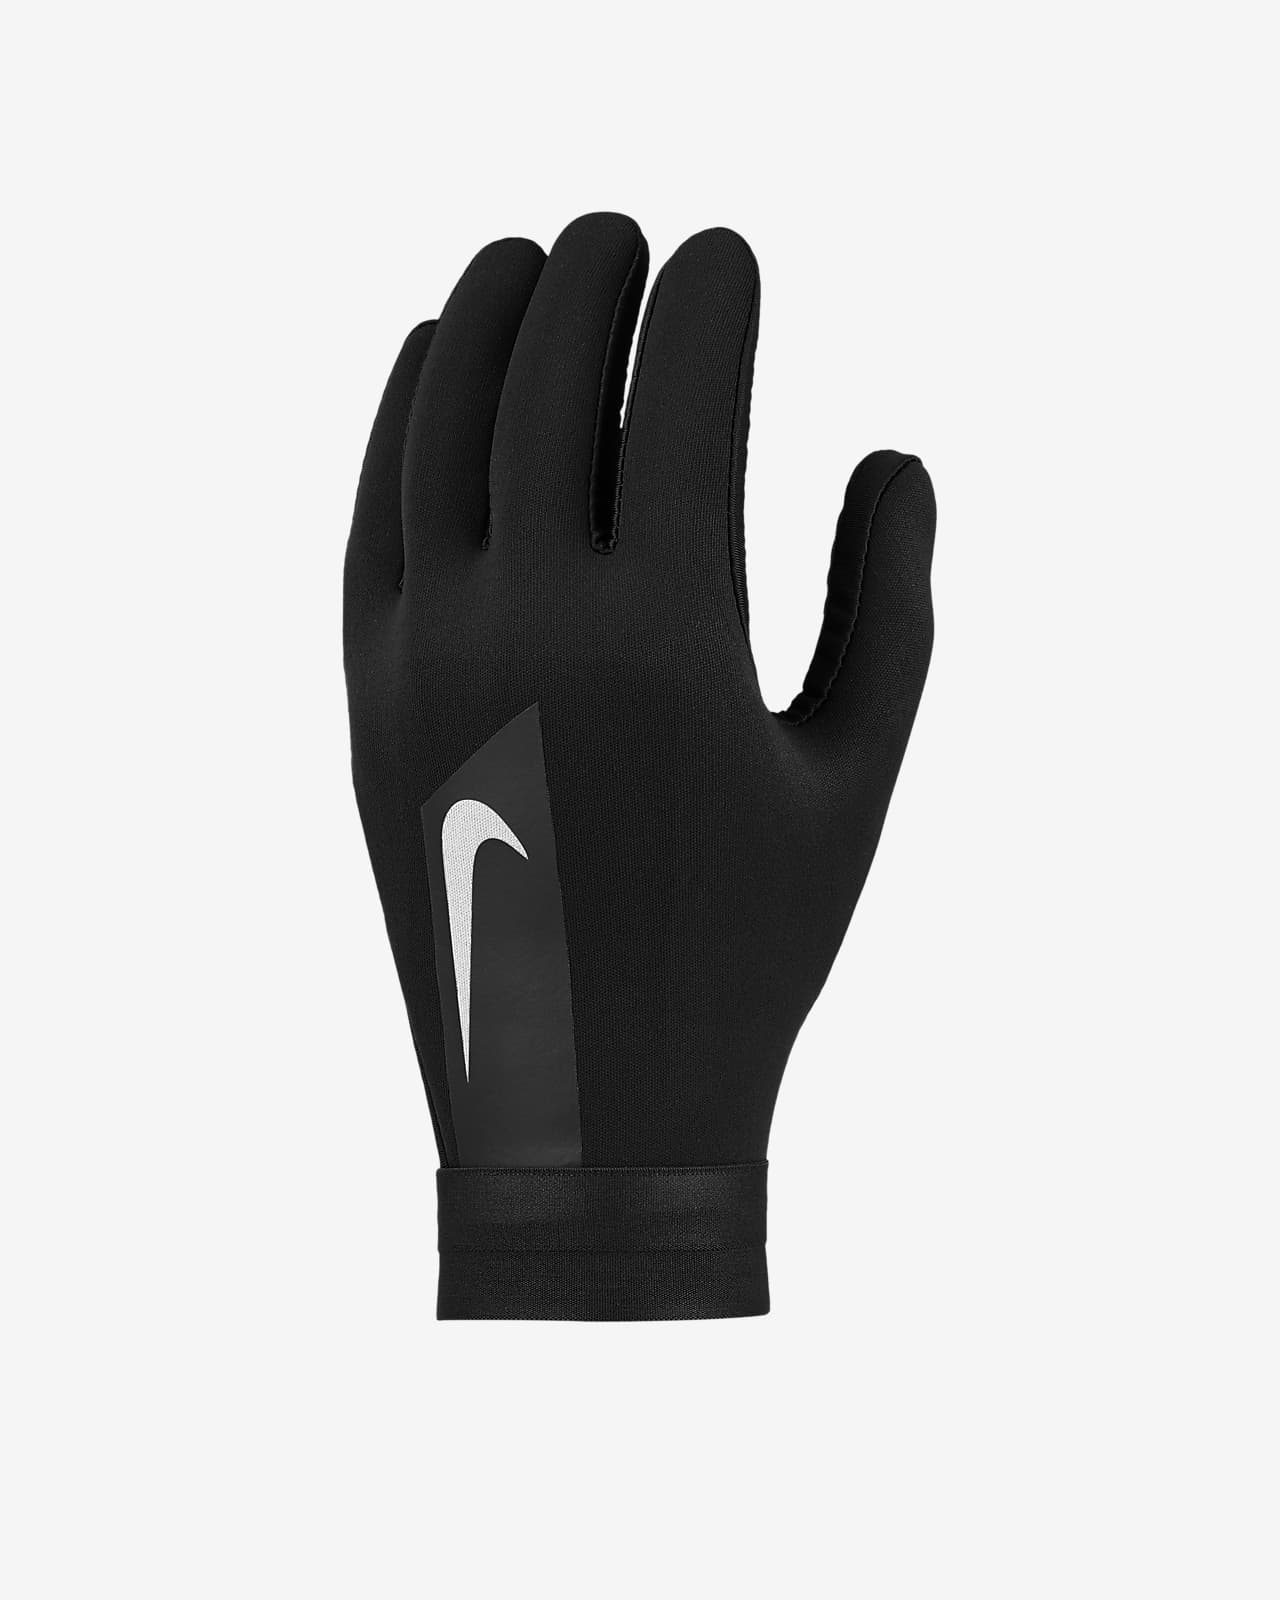 nike men's gloves size chart